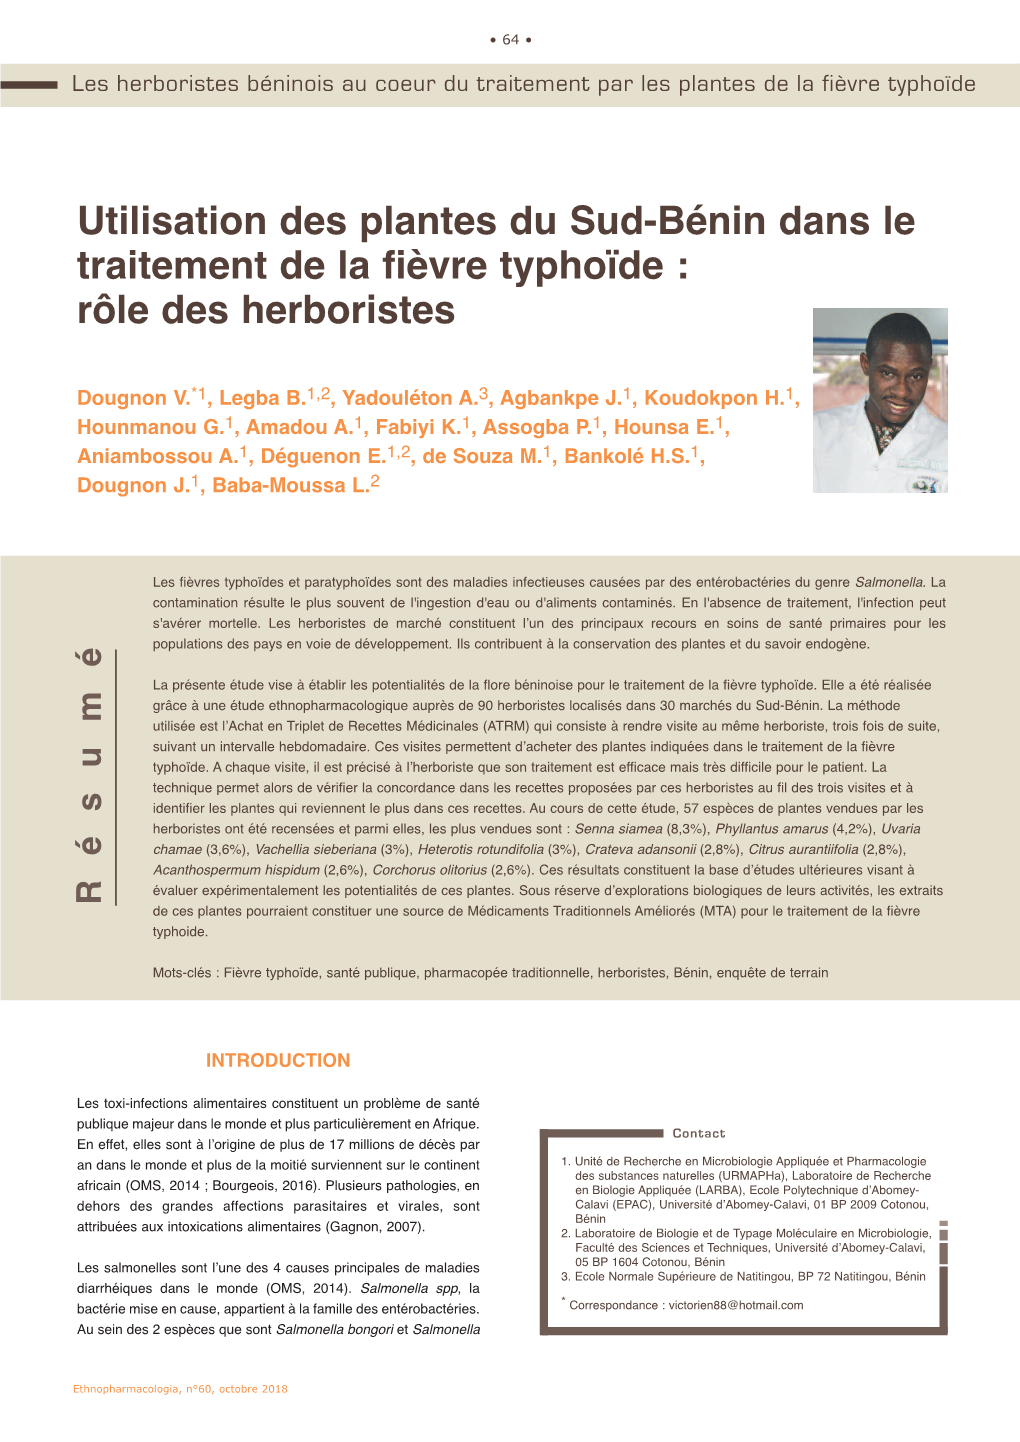 Utilisation Des Plantes Du Sud-Bénin Dans Le Traitement De La Fièvre Typhoïde : Rôle Des Herboristes